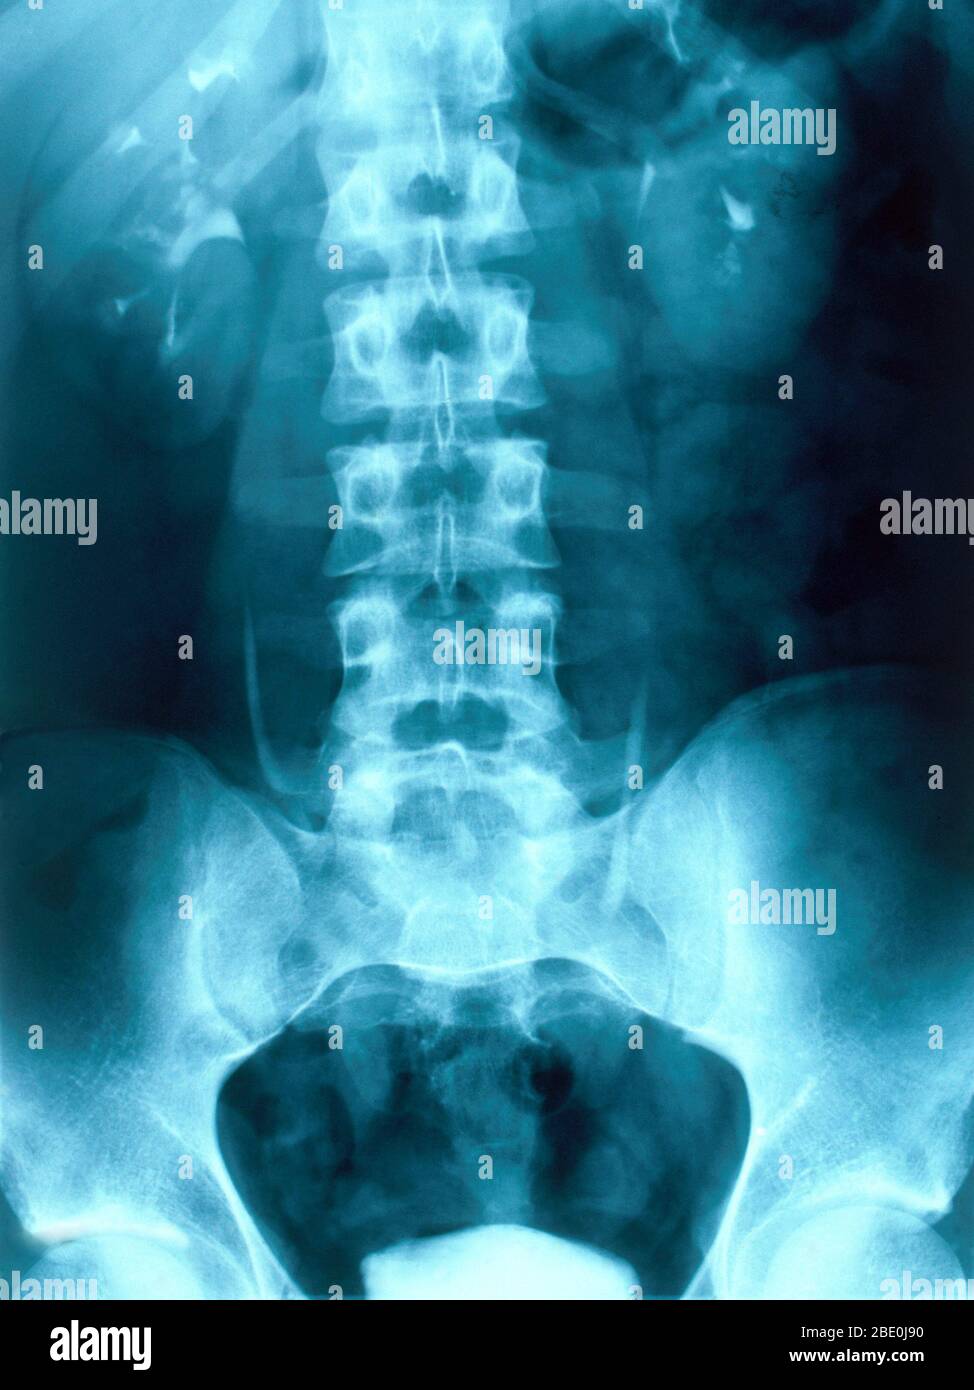 Radiographie montrant les reins humains normaux. La fonction principale des reins est de maintenir l'équilibre homéostatique des fluides corporels. Banque D'Images